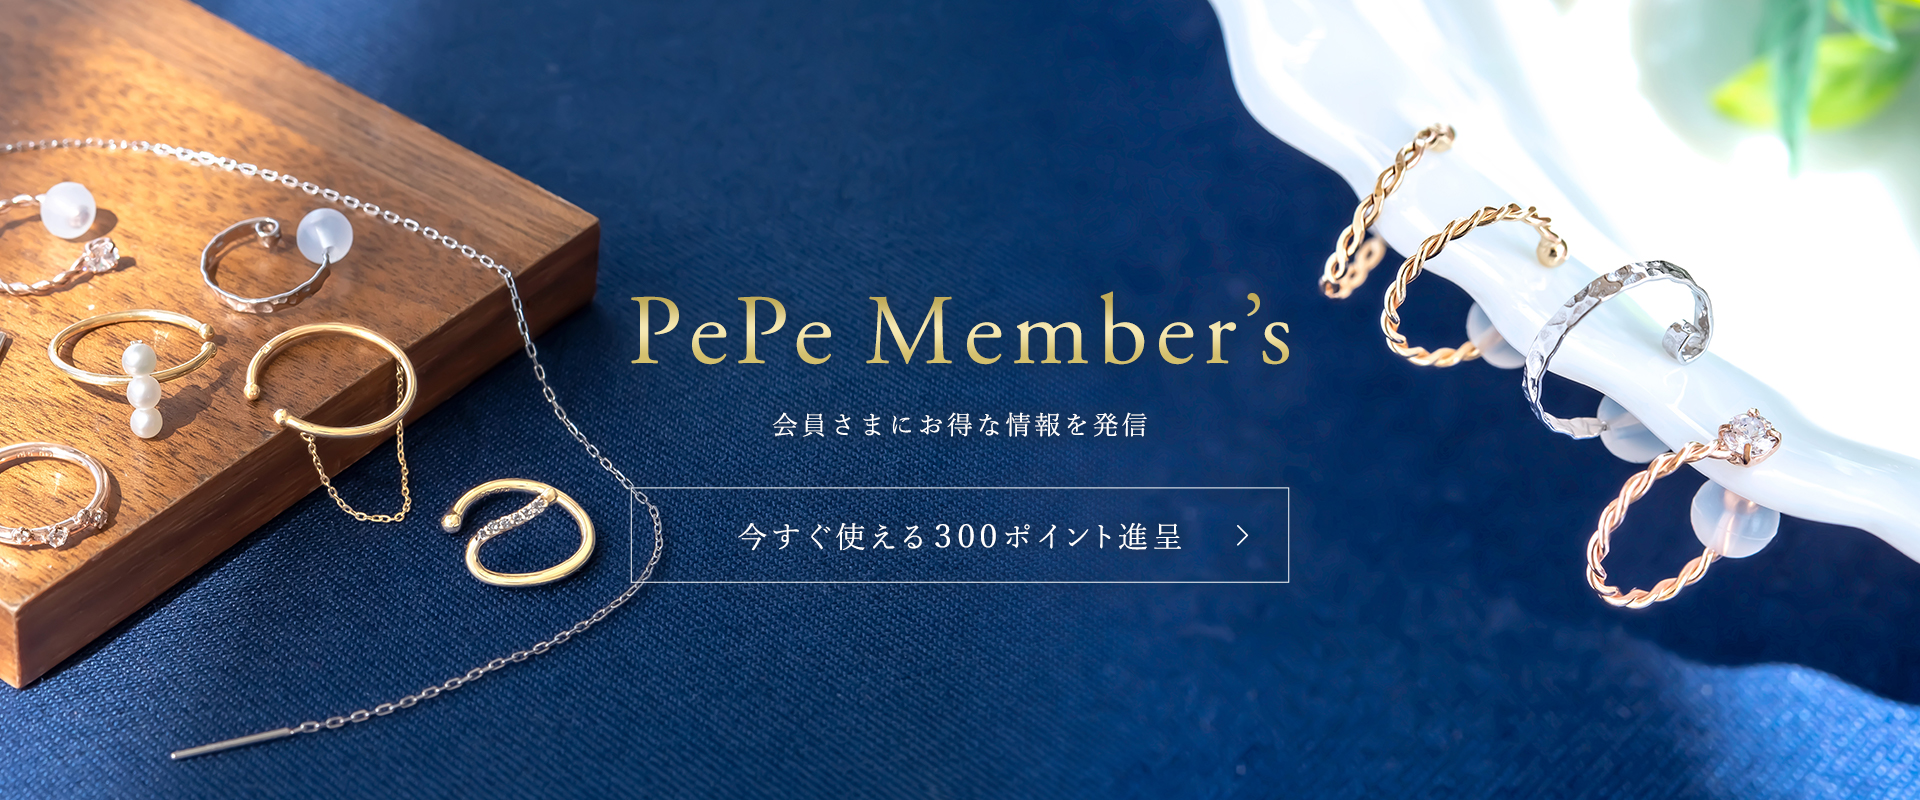 PePe Member's